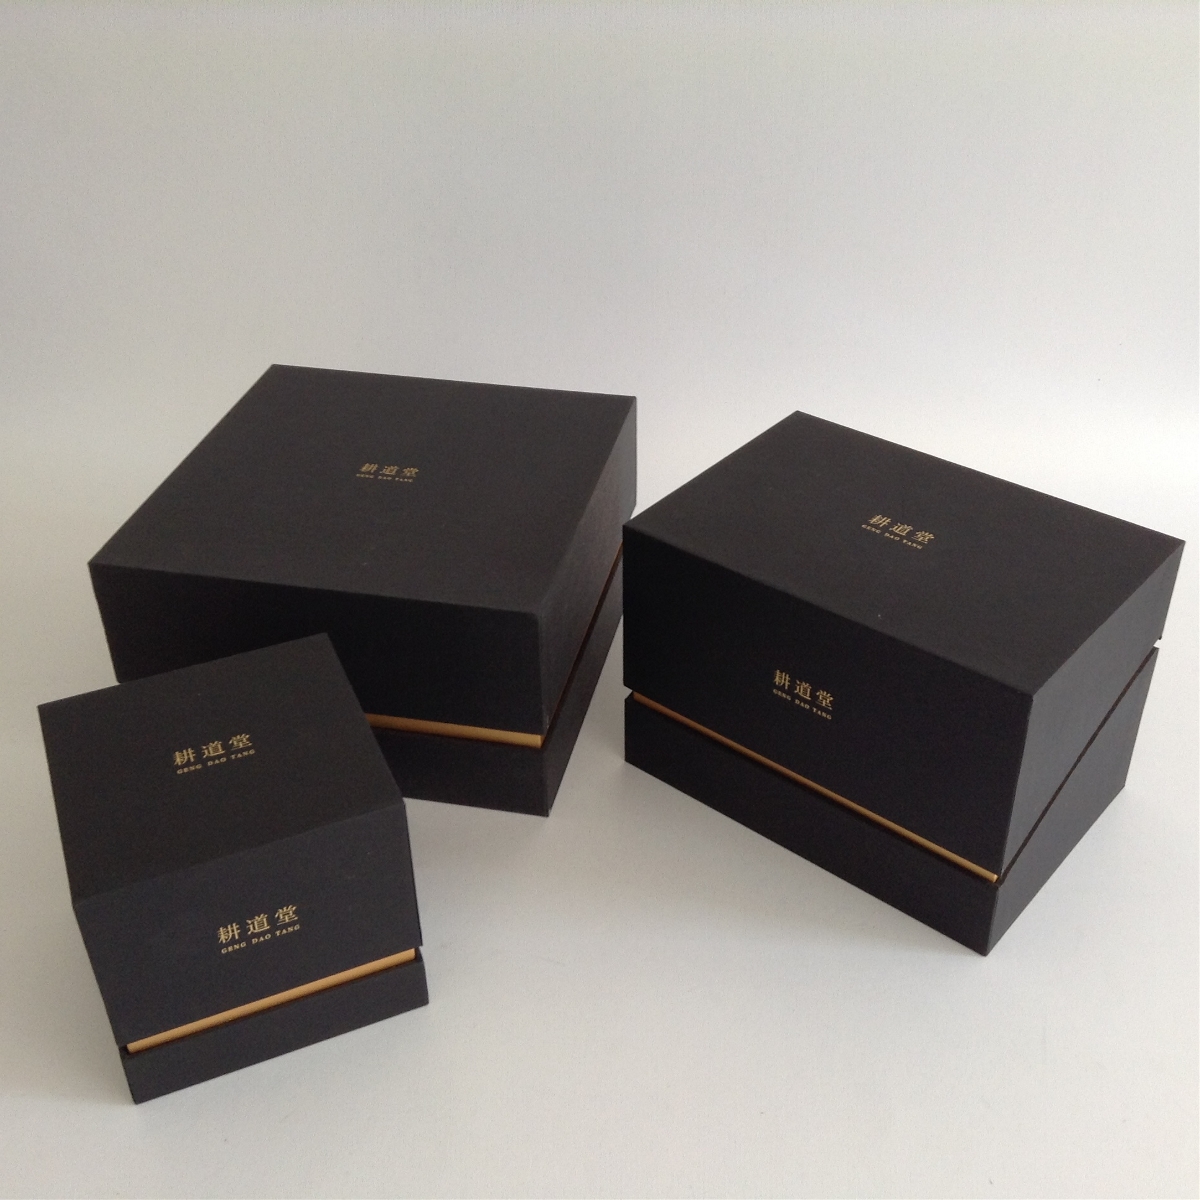 原创瓷器礼品系列包装盒设计/  - 吉彩包装原创出品